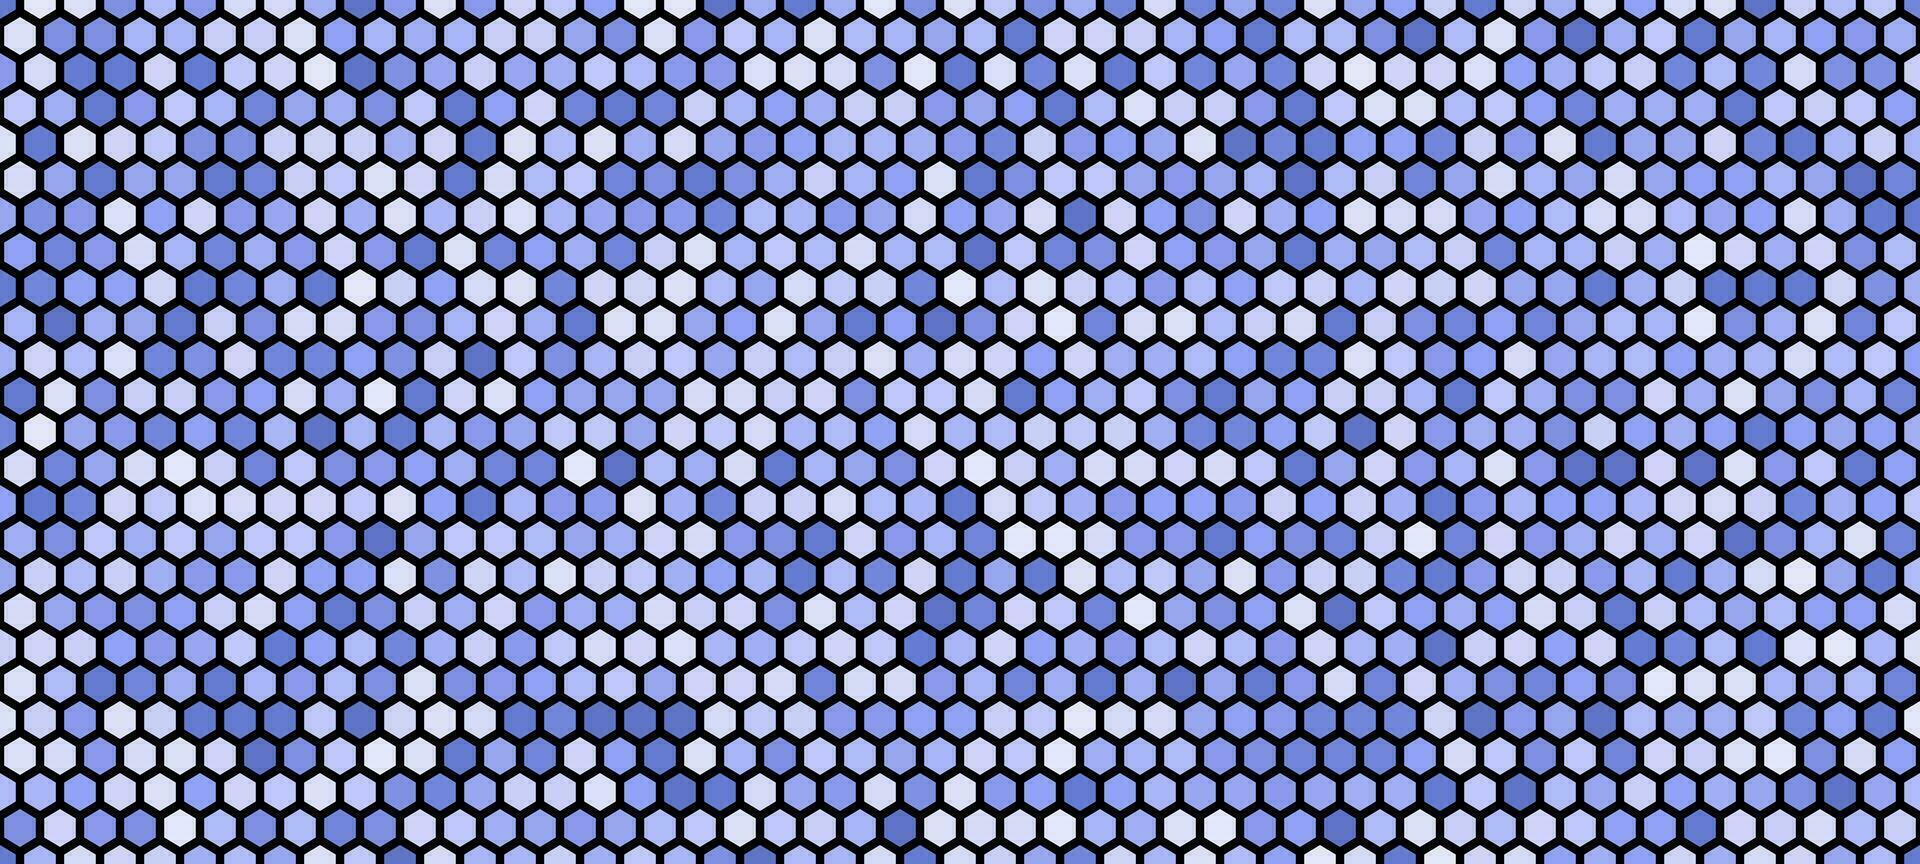 abstrait hexagonal géométrique modèle bleu Contexte vecteur